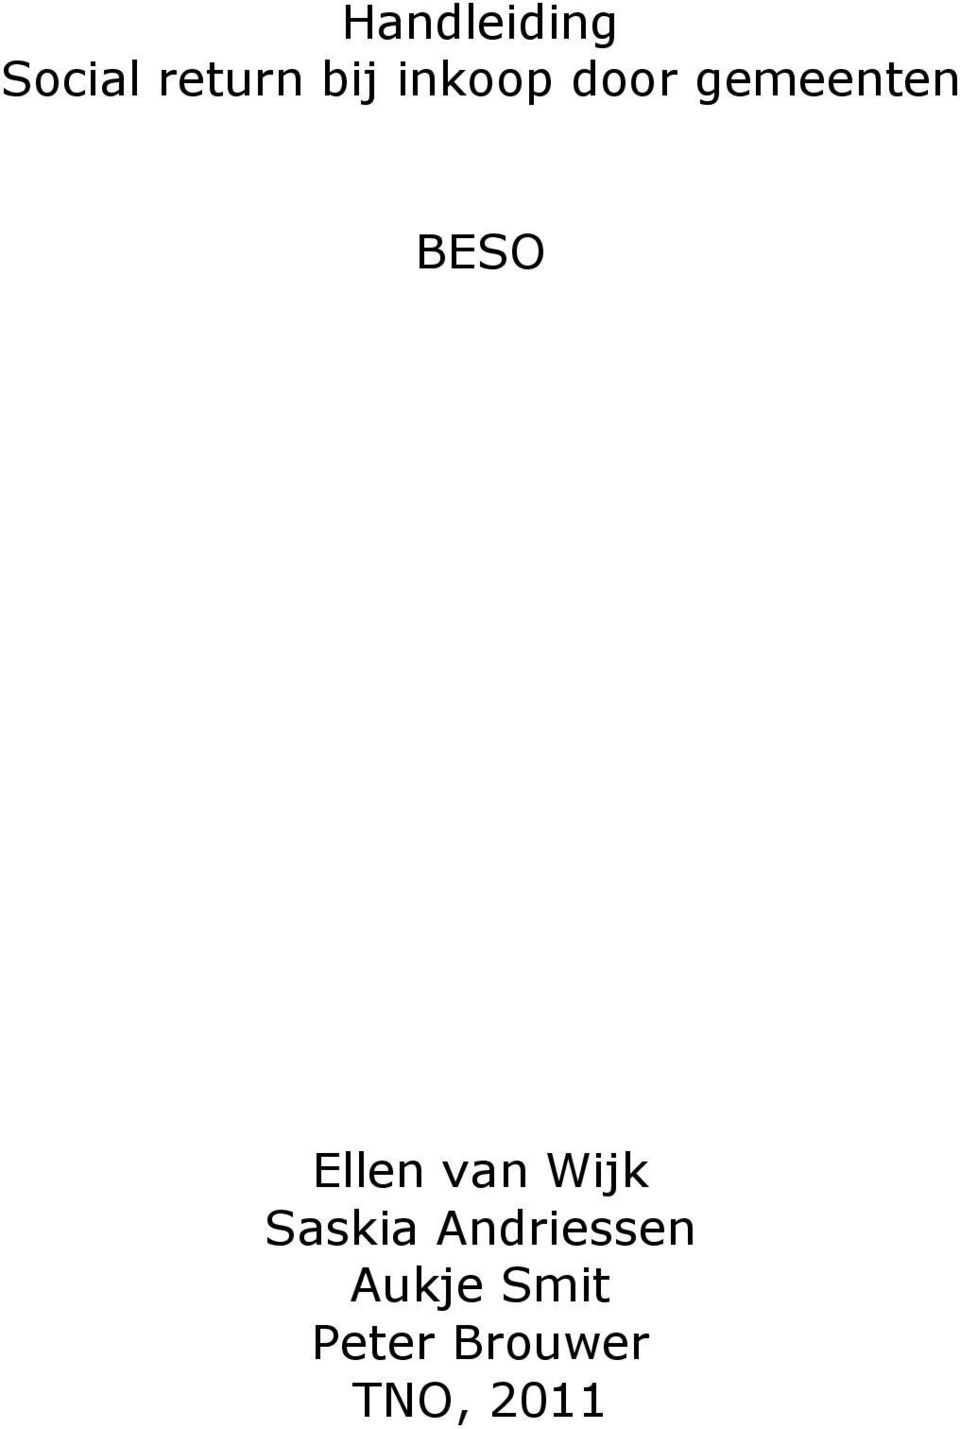 Ellen van Wijk Saskia